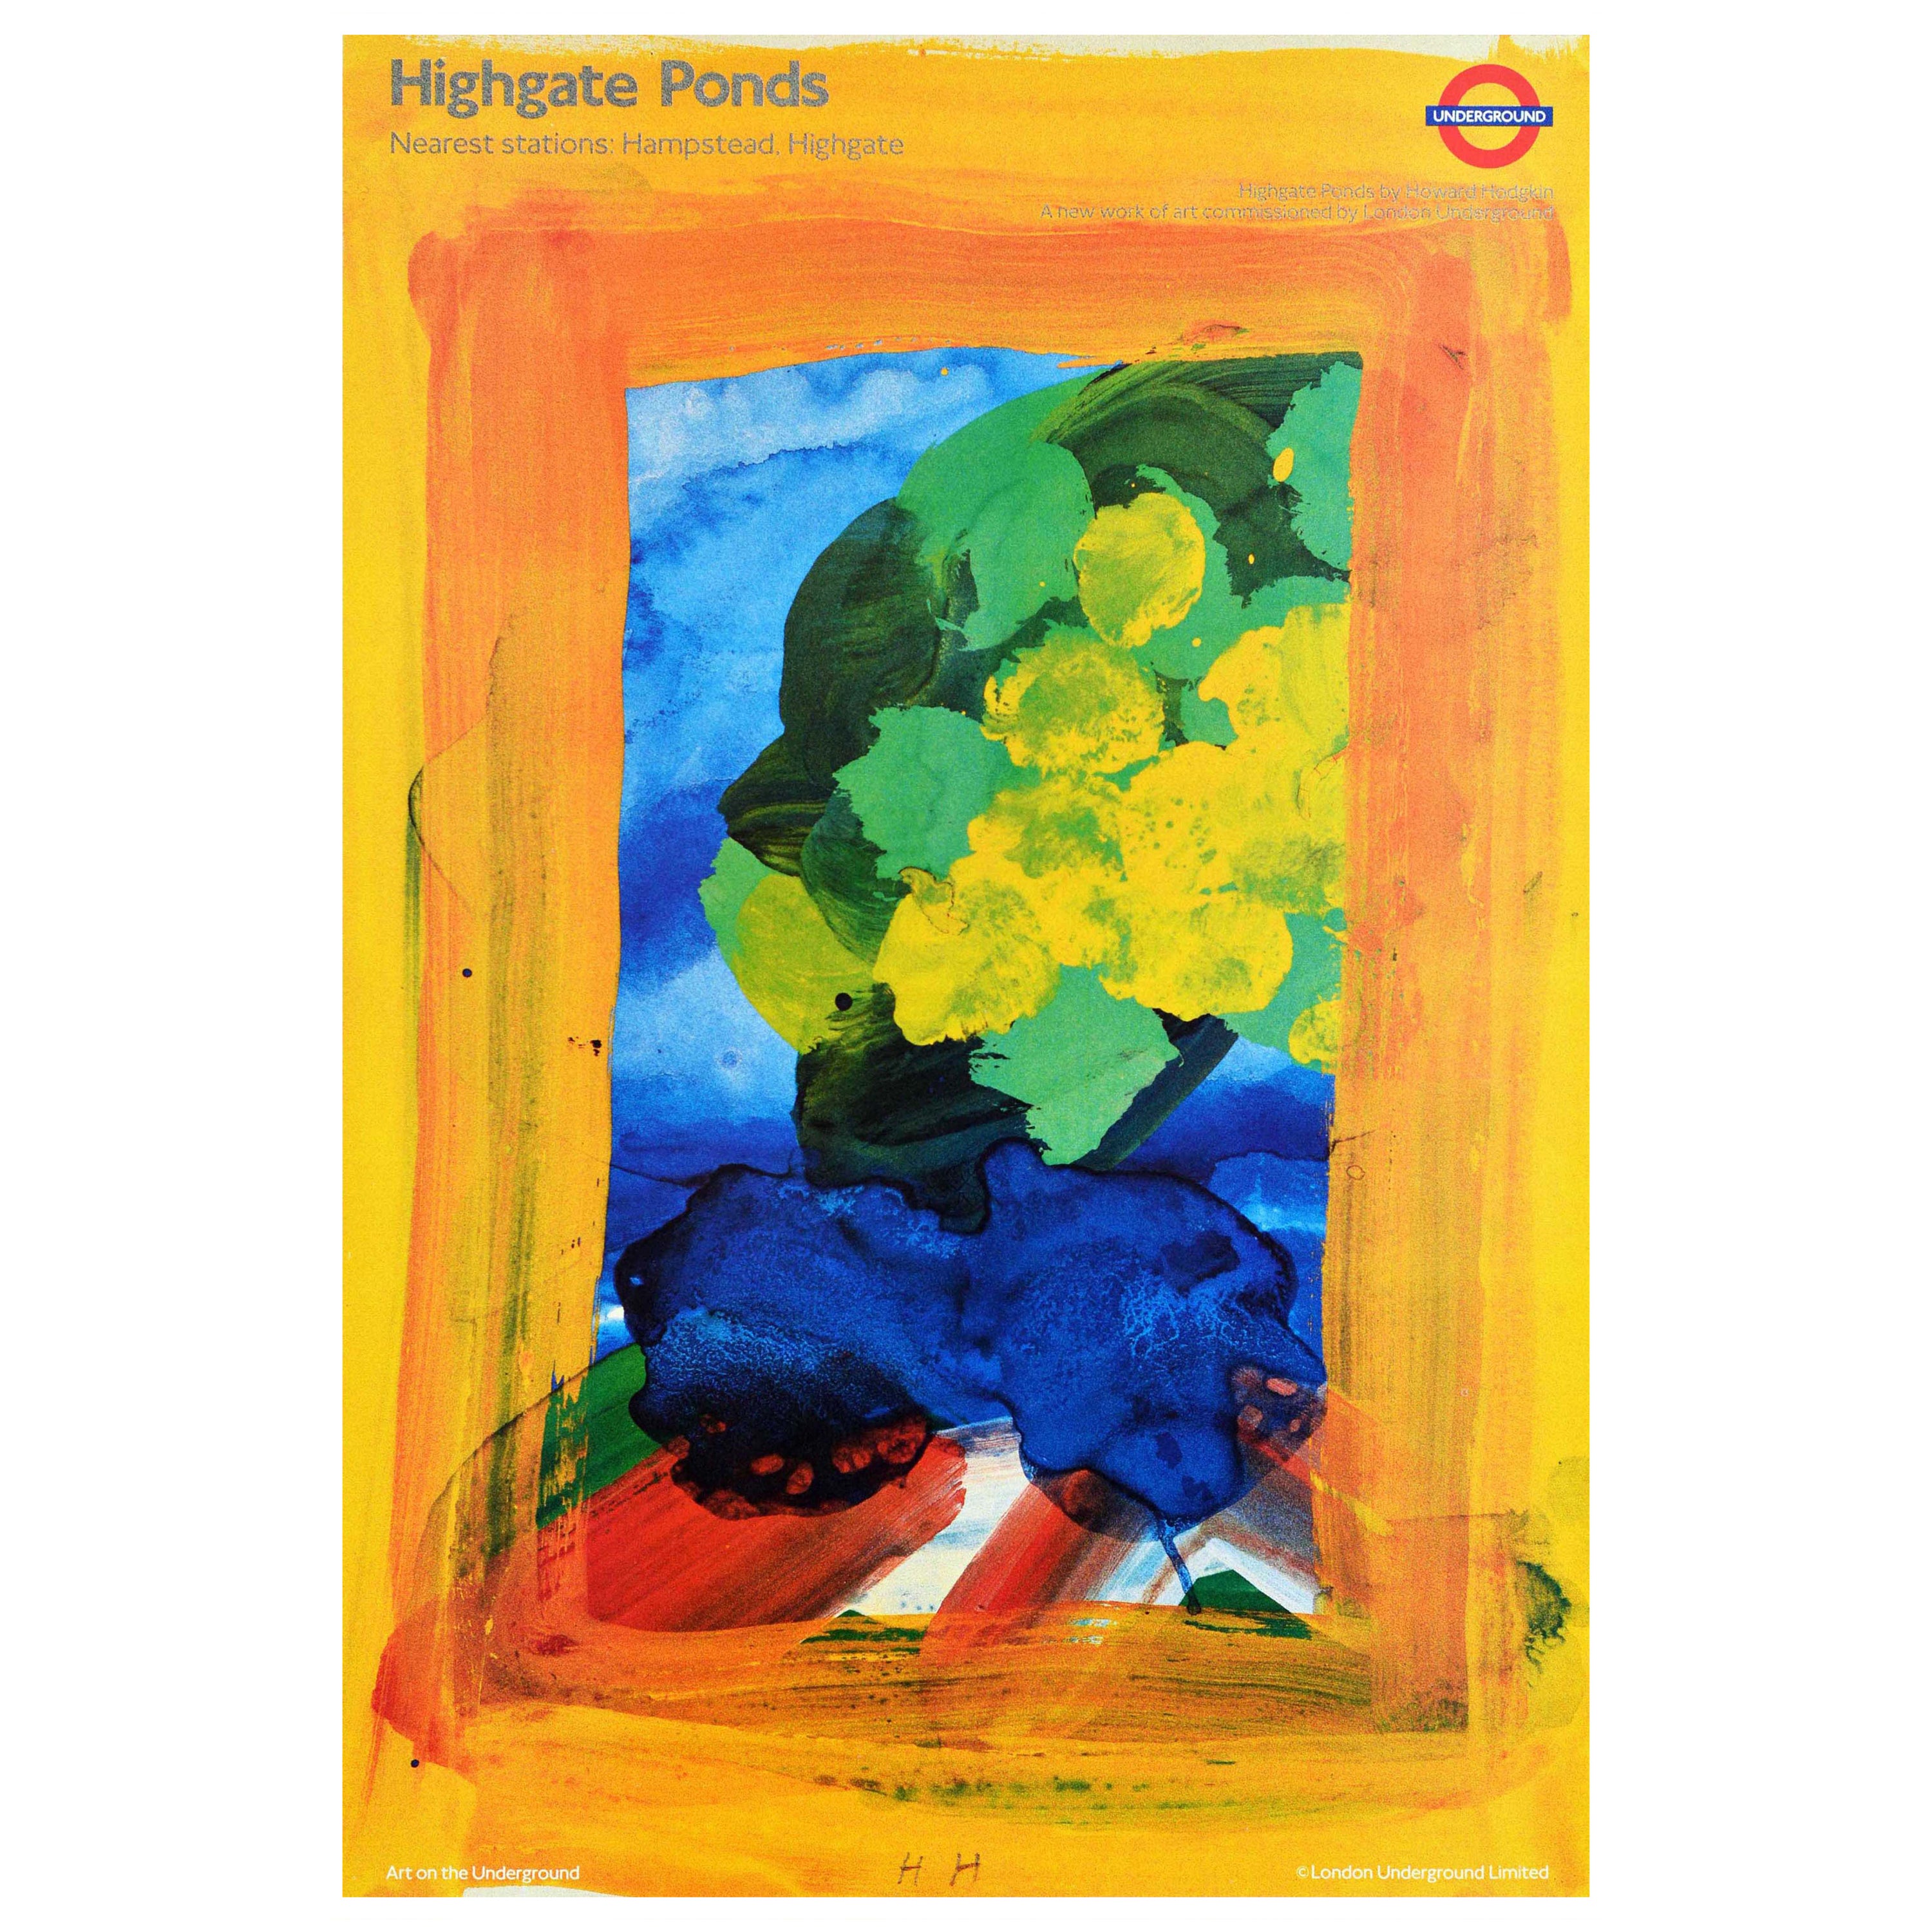 Original Vintage London Underground Poster Highgate Ponds Howard Hodgkin Art LT For Sale